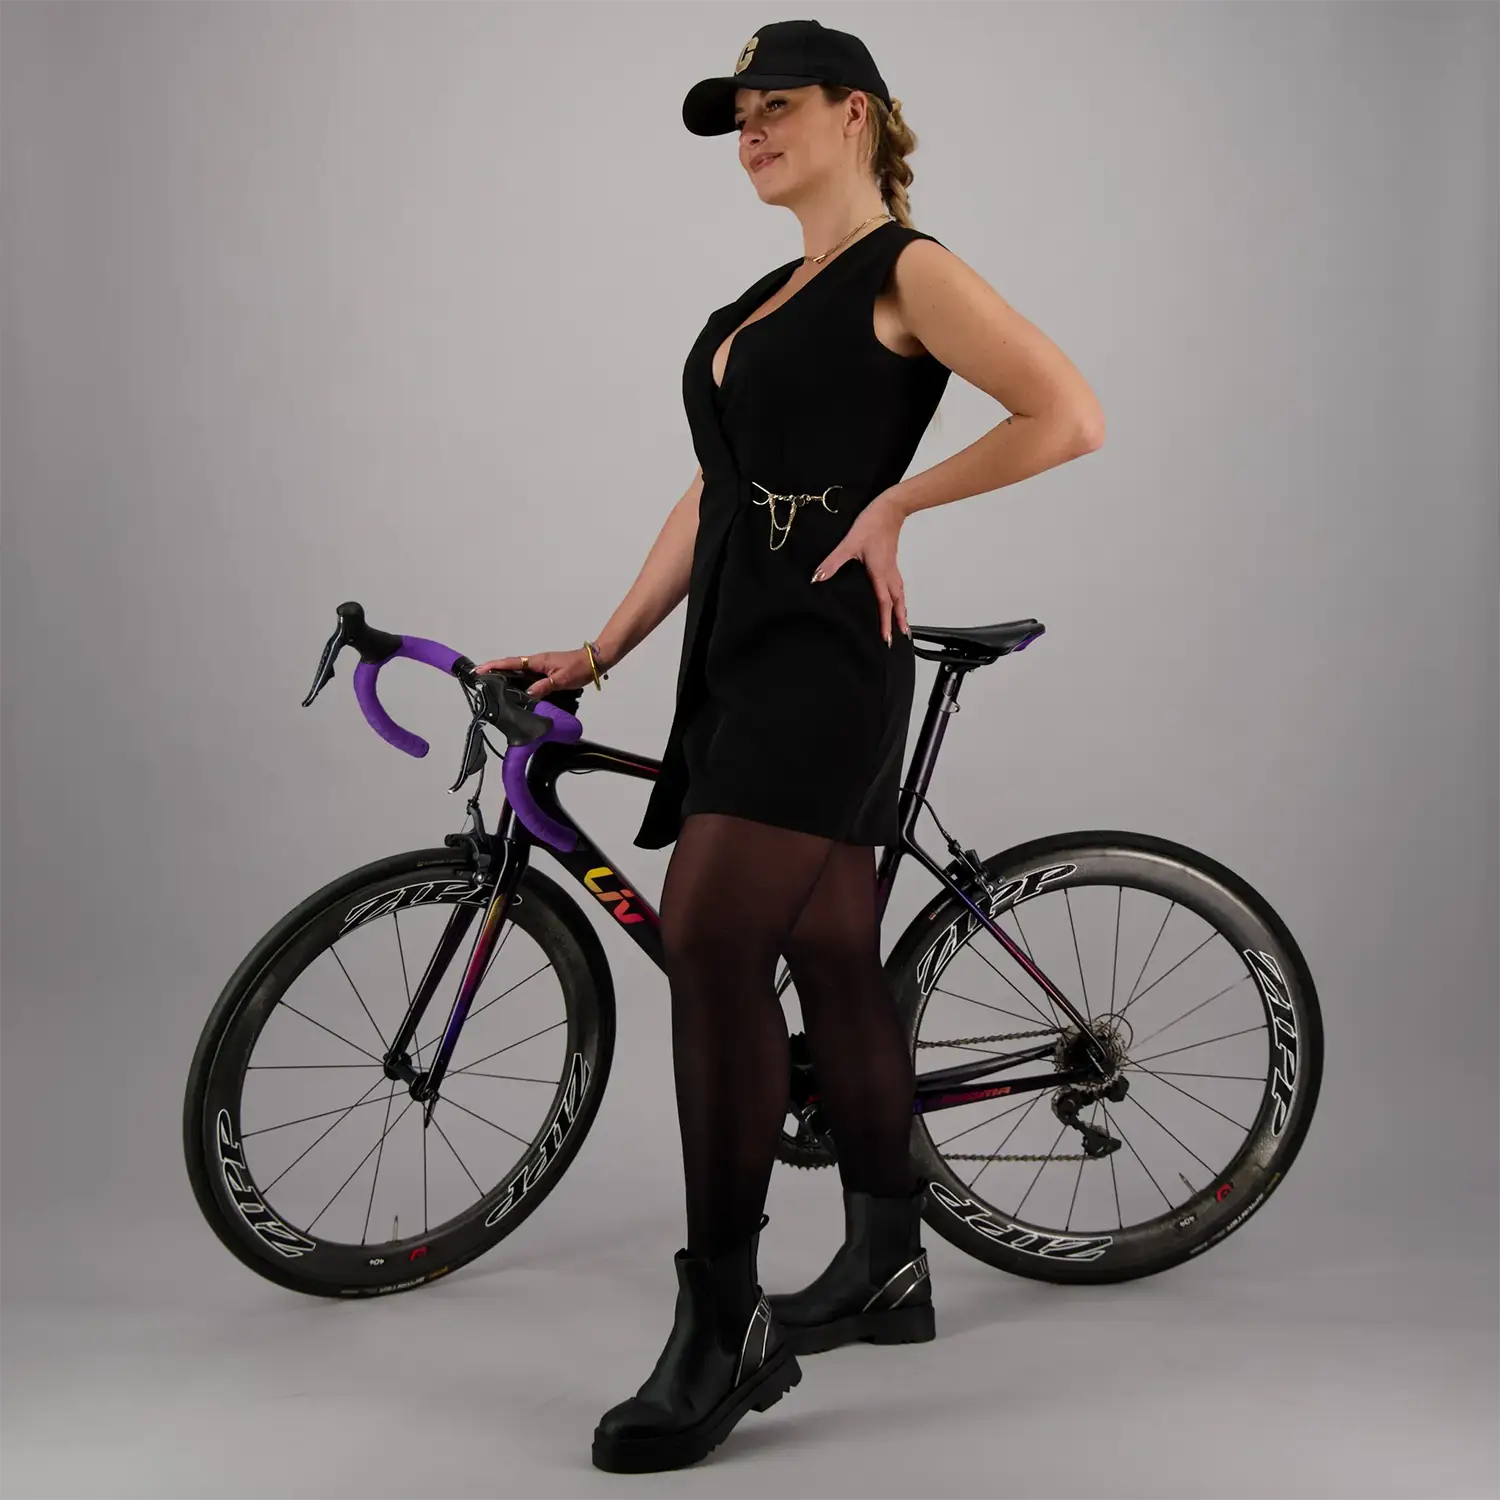 REINES marque de textile vélo féminin